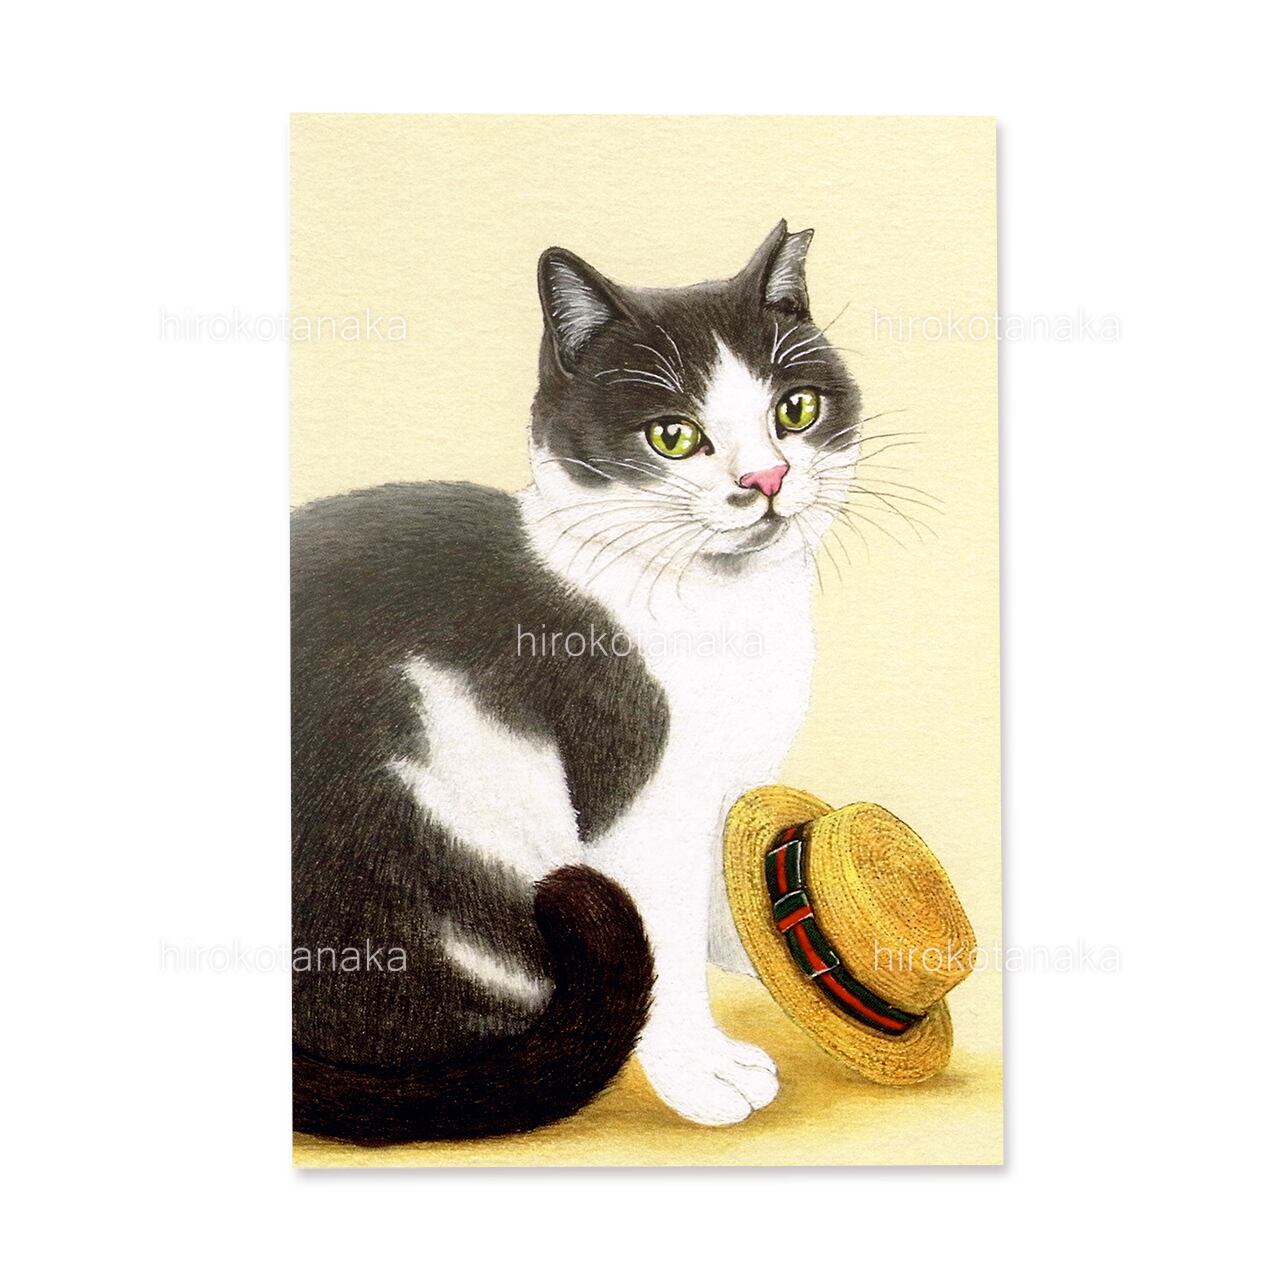 9.ねこと麦わら帽 ポストカード / Cat and Straw Hat Postcard